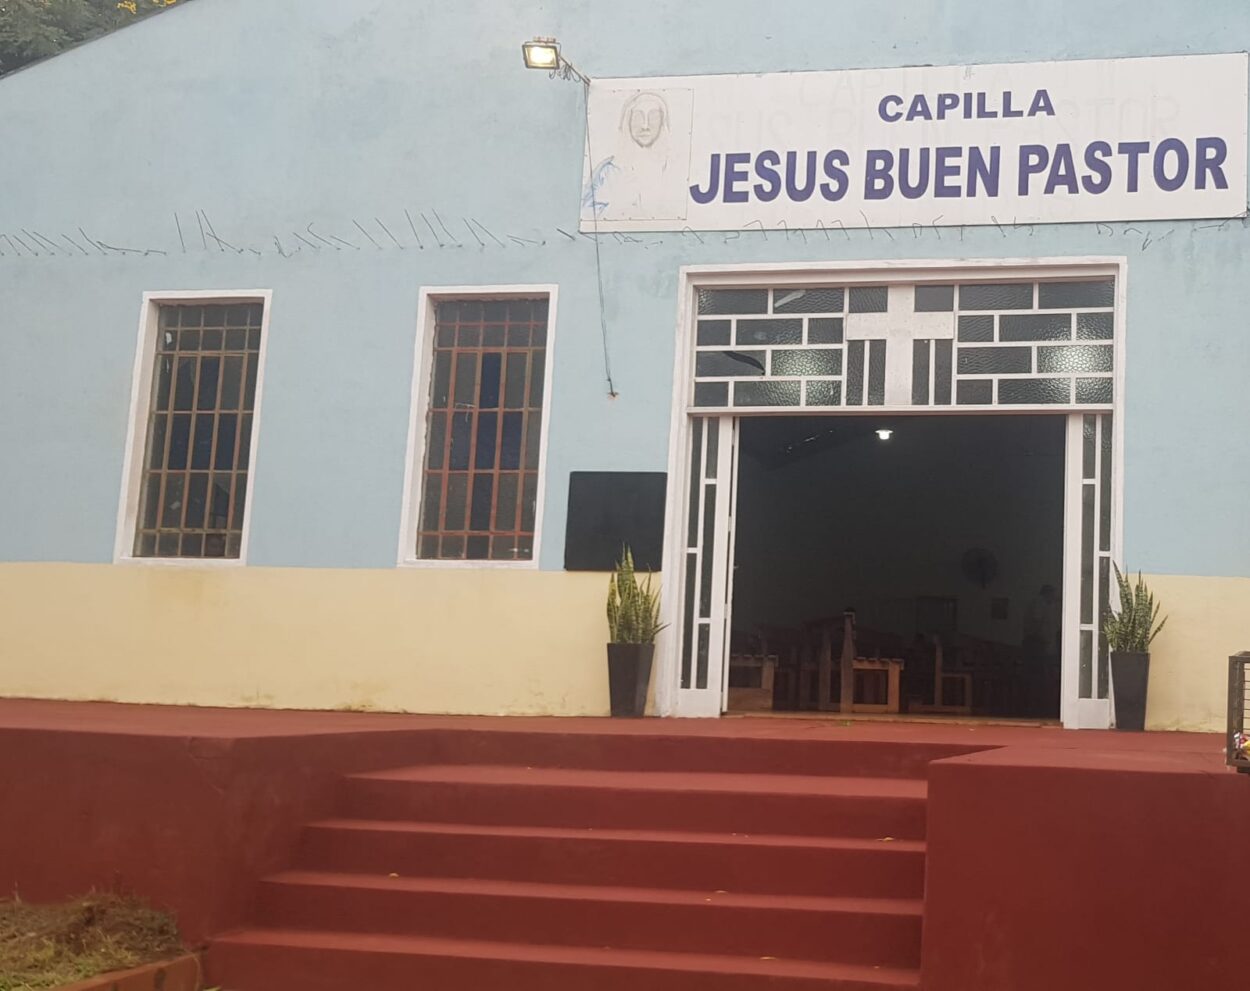 Capilla “Jesús Buen Pastor” celebrará su fiesta patronal este domingo 21 imagen-59